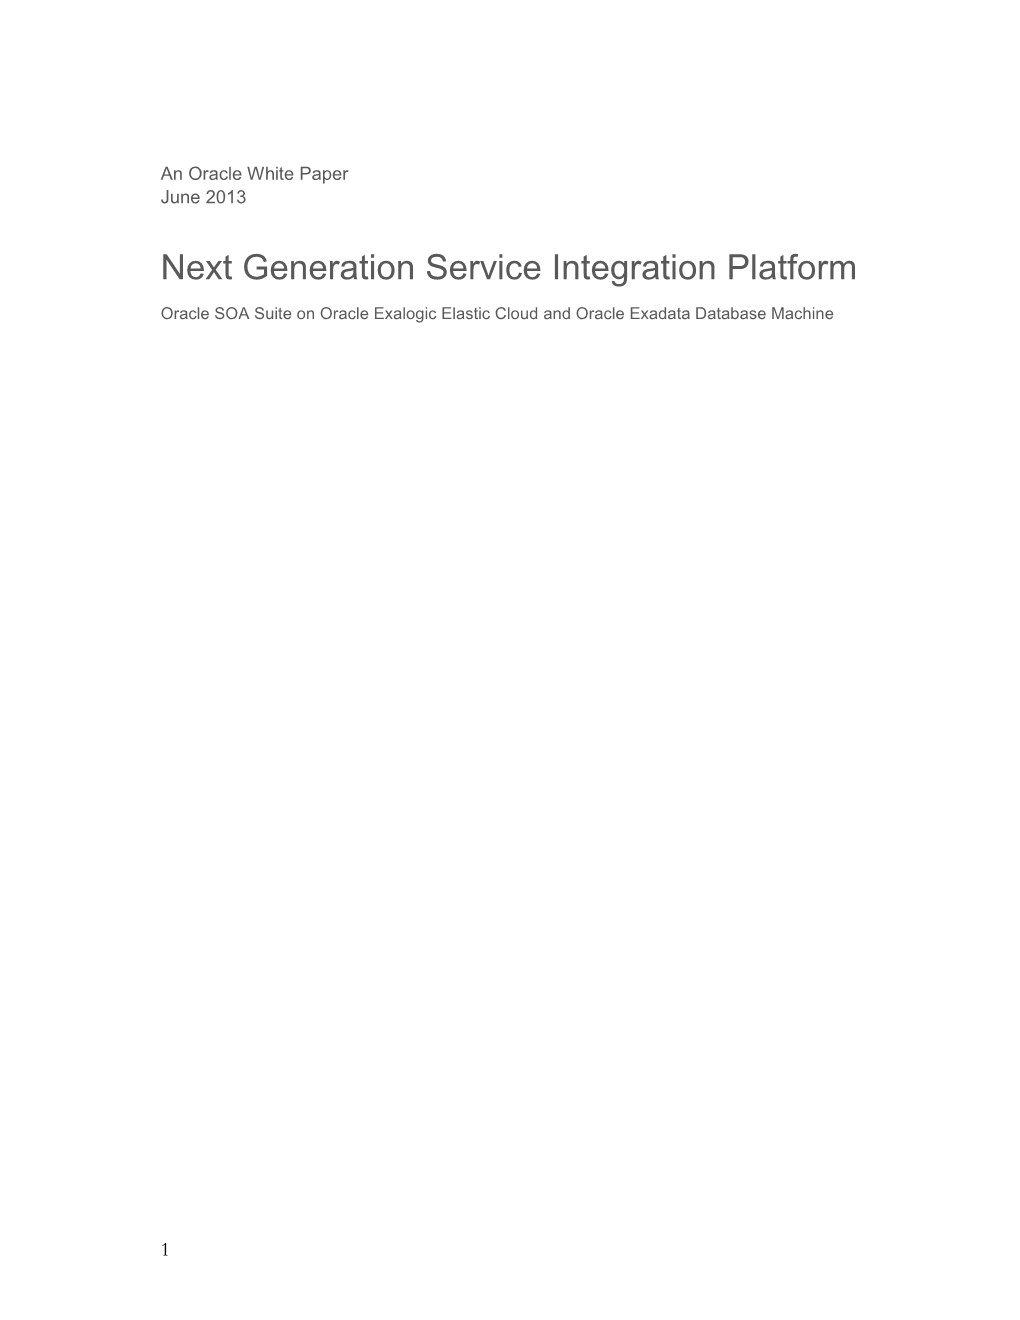 Next Generation Service Integration Platform Oracle SOA Suite on Oracle Exalogic Elastic Cloud and Oracle Exadata Database Machine